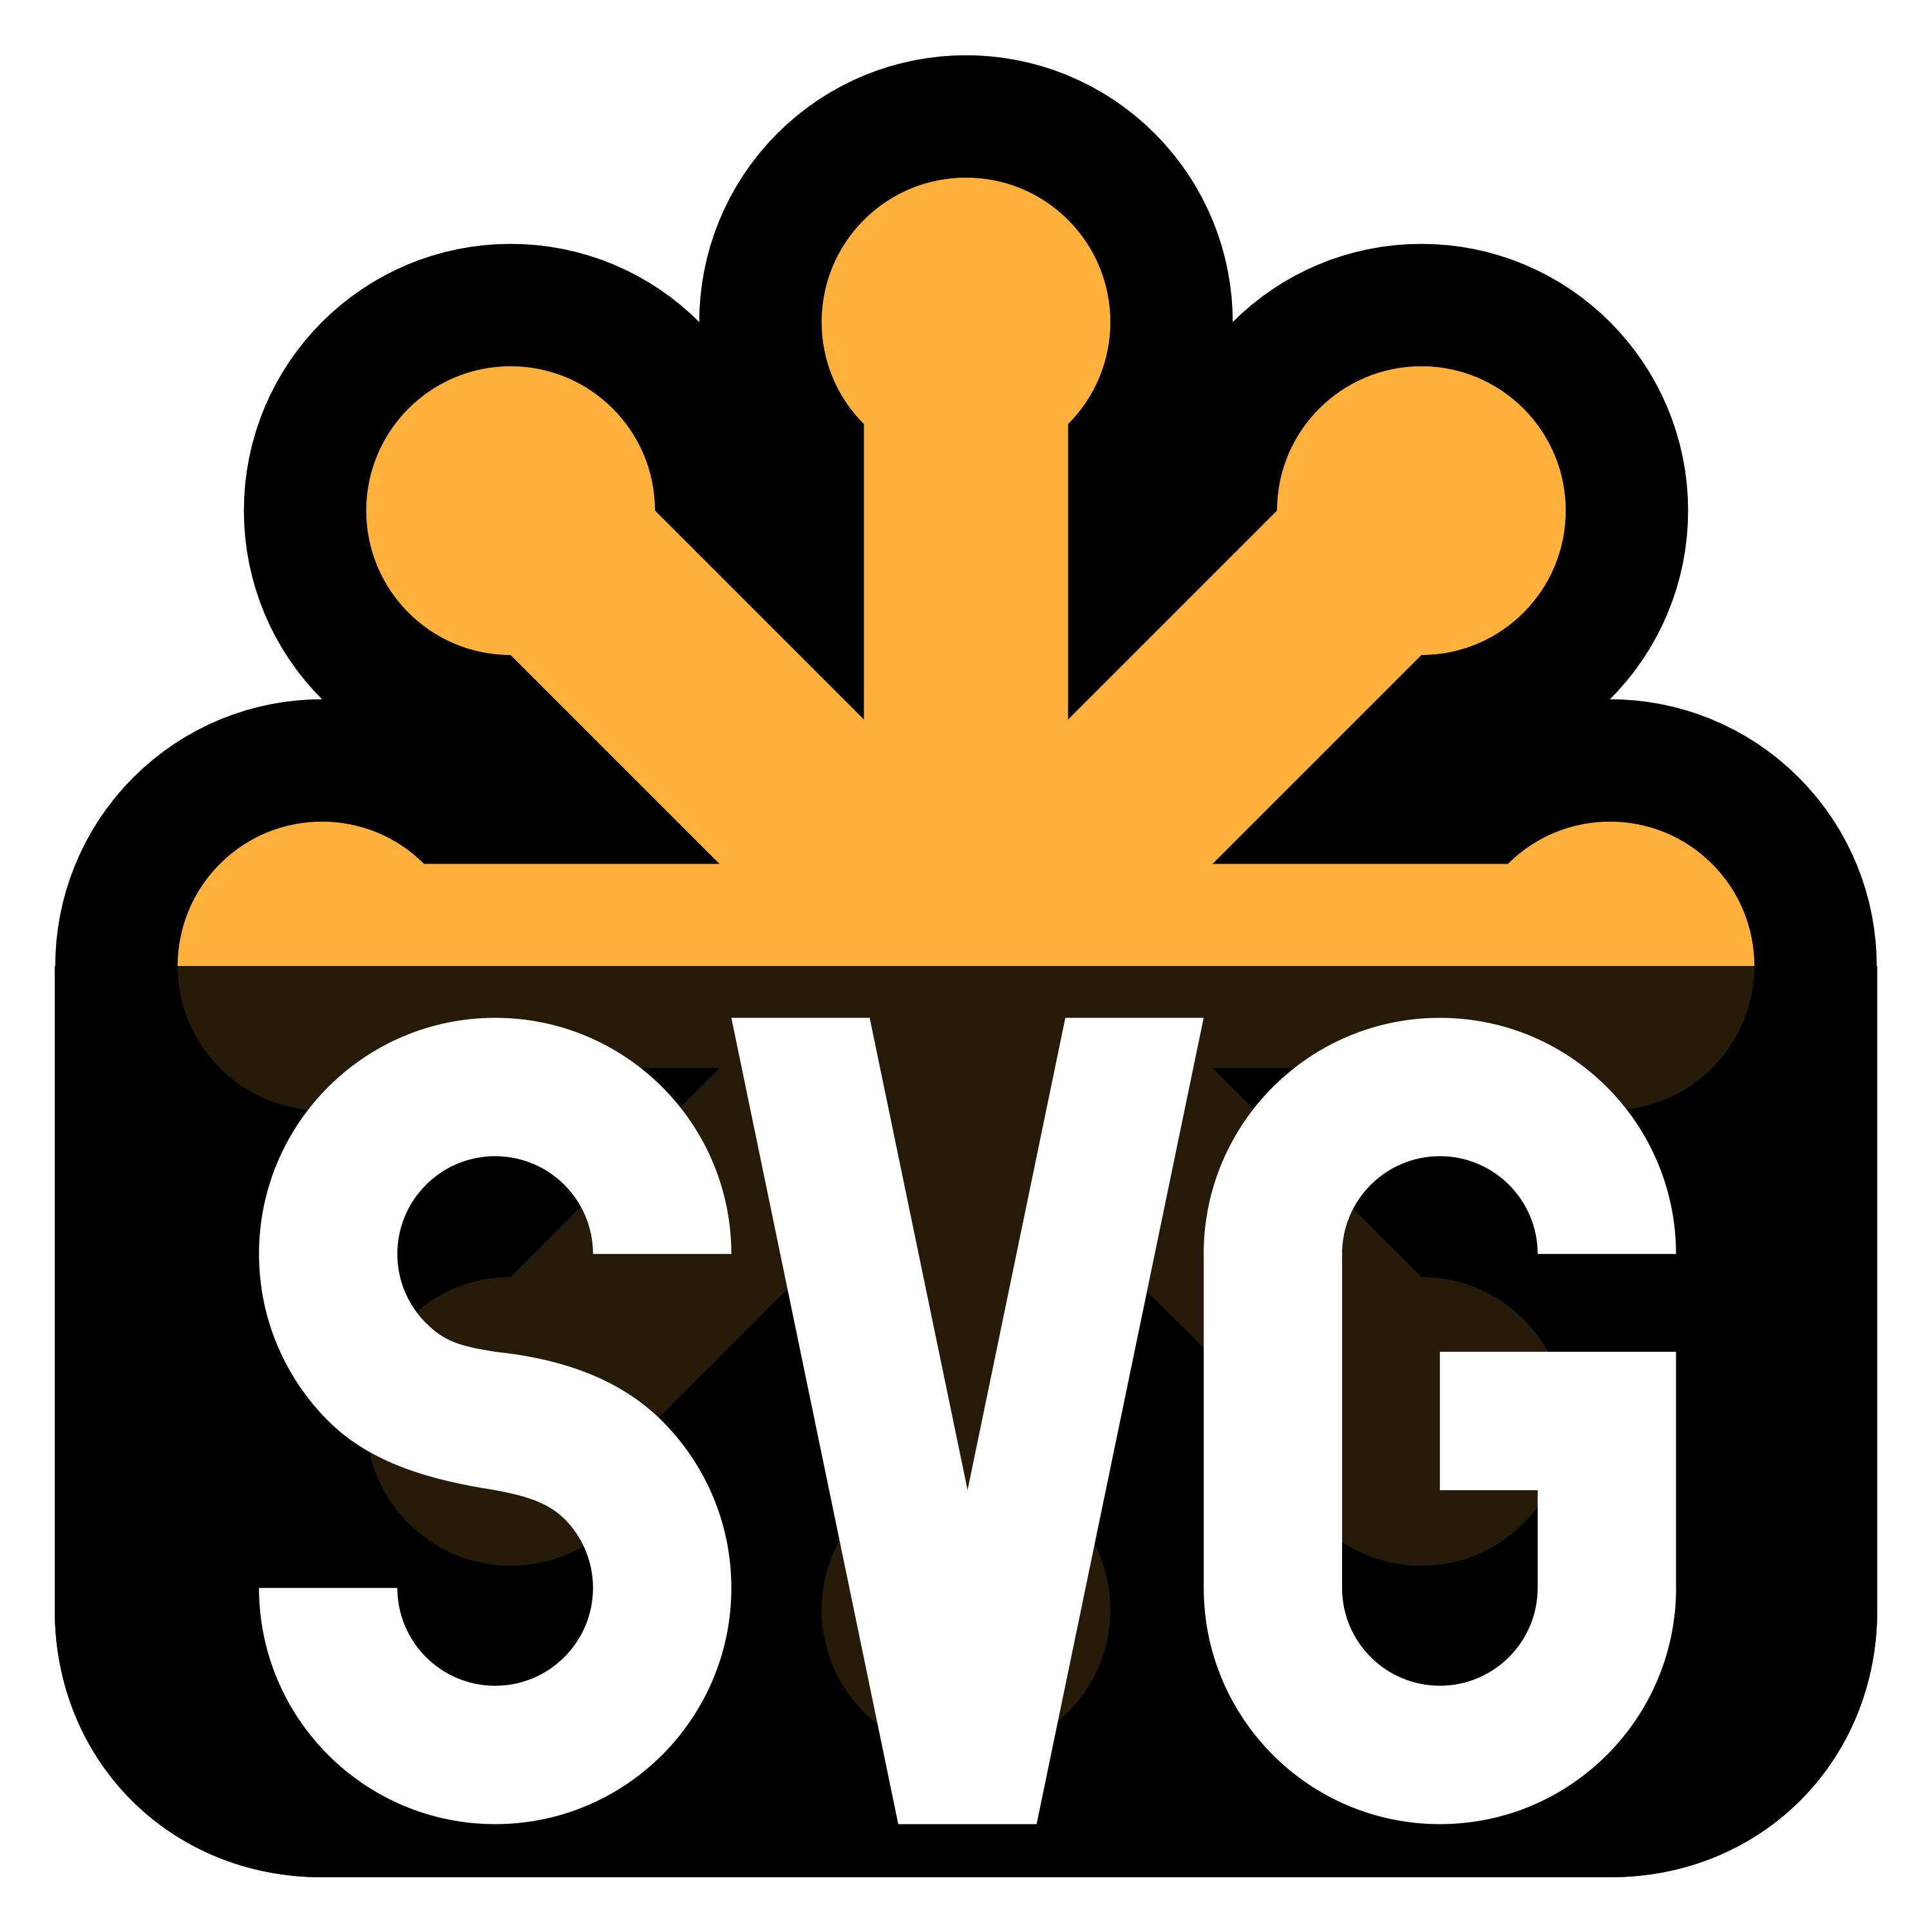 SVG Logo Transparent Image